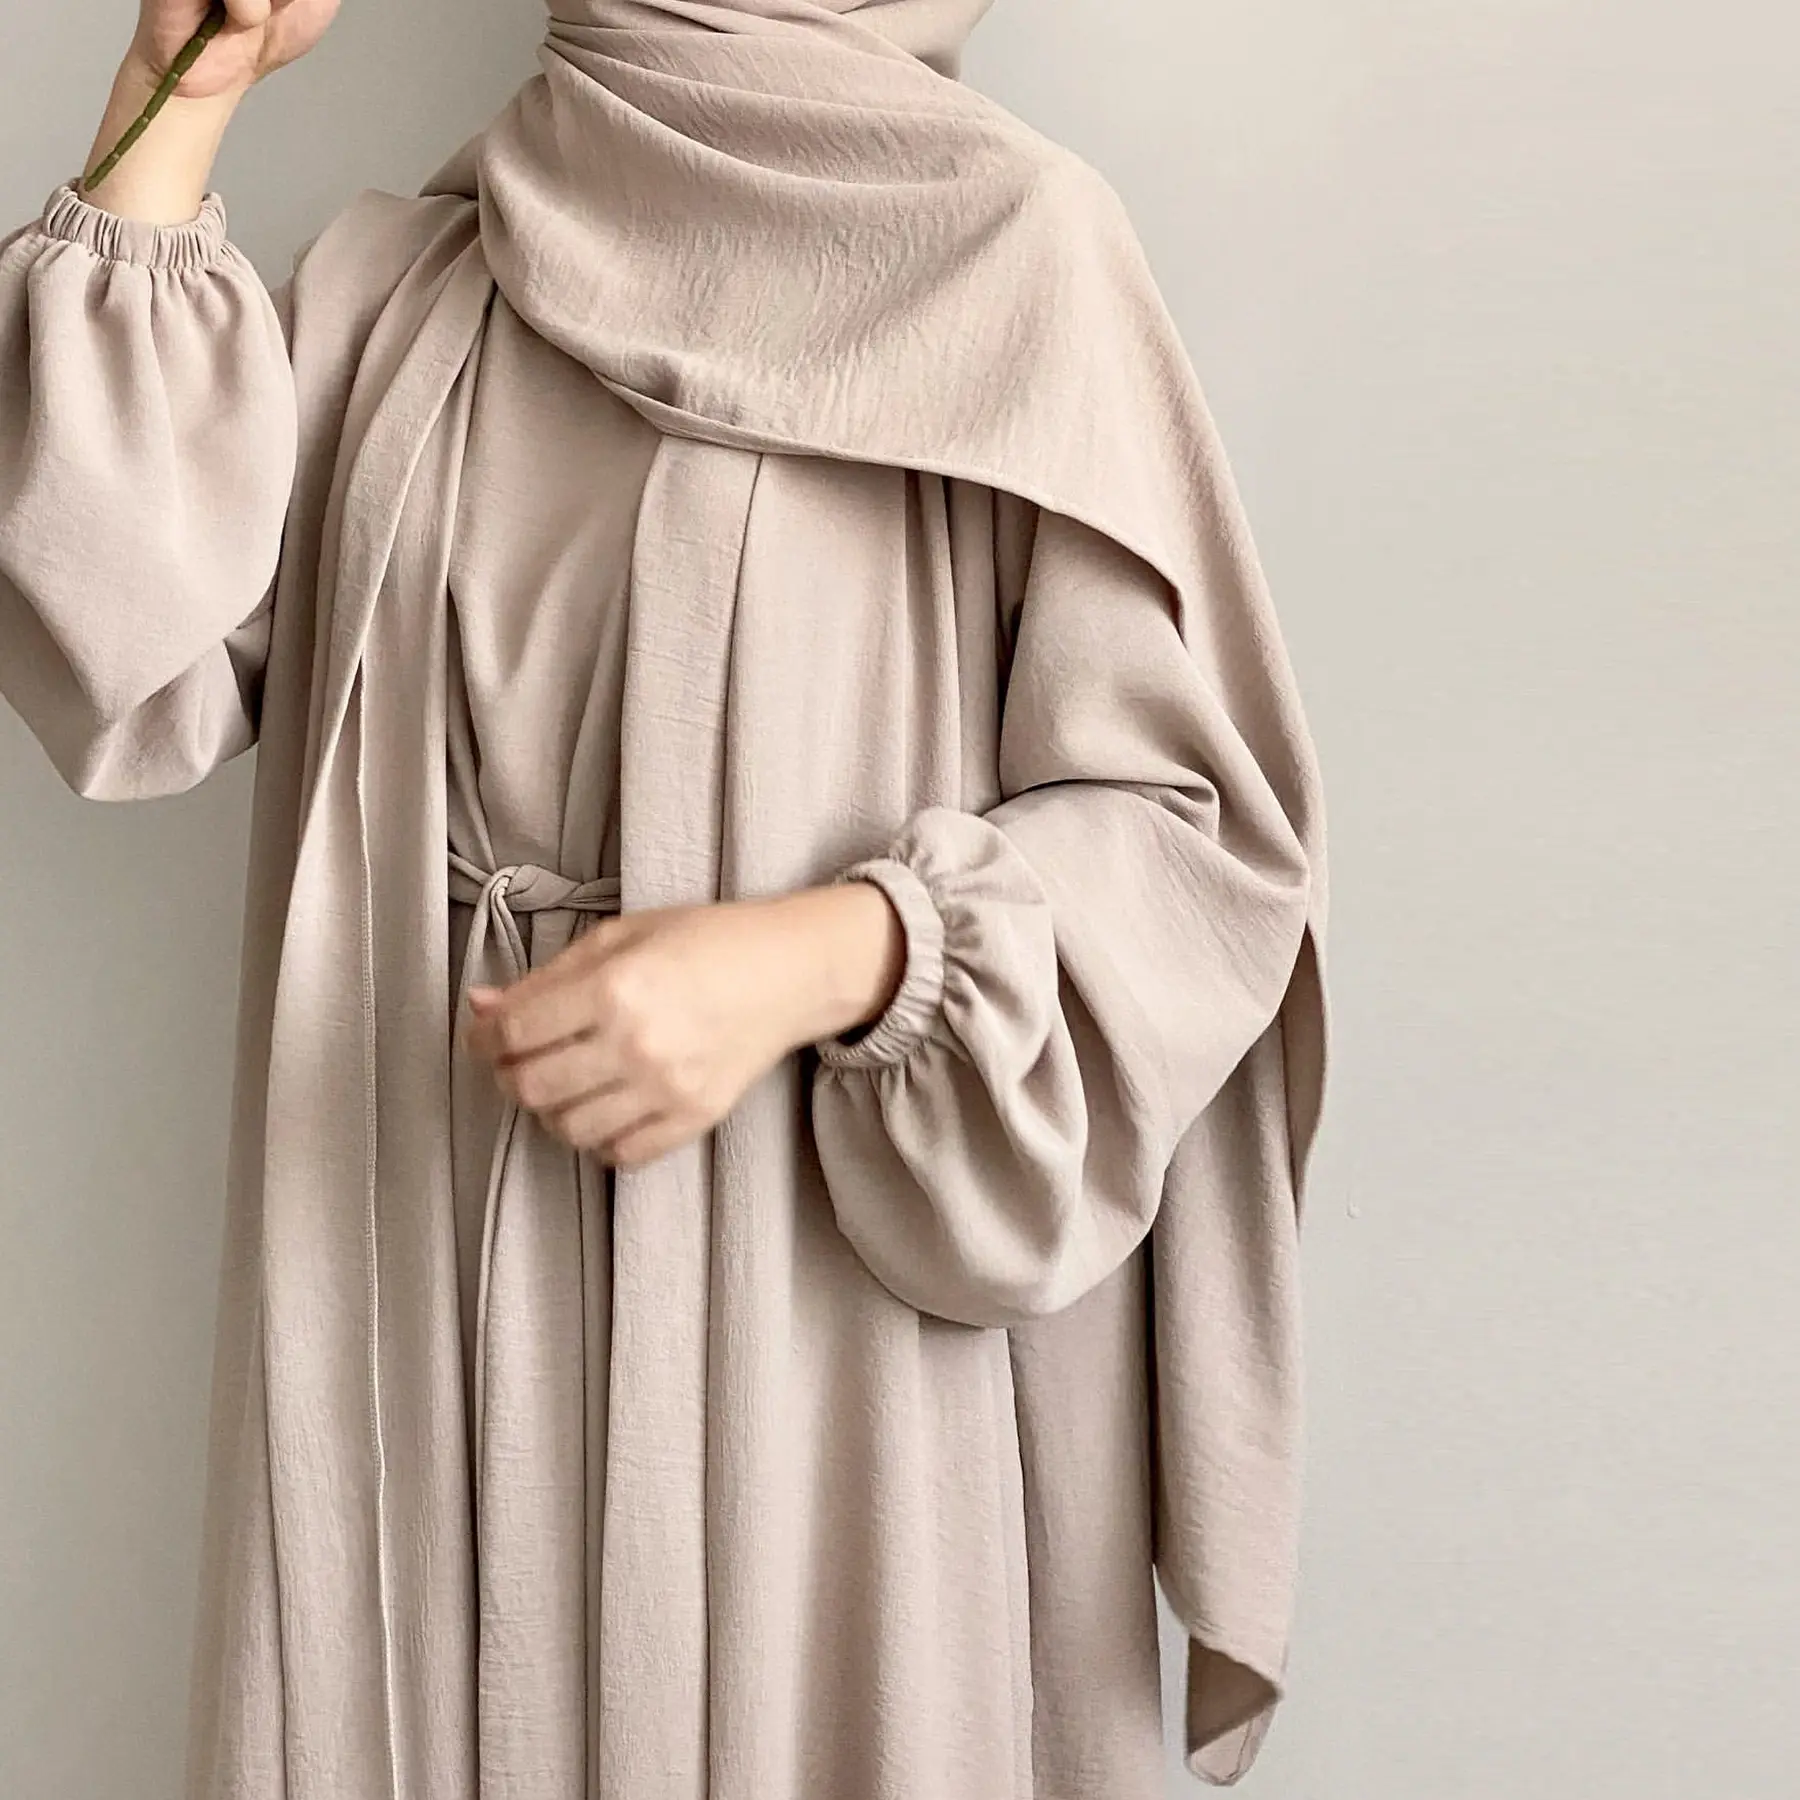 أحدث عباءة مخصصة للاحتفال بالشهر رمضان بجودة عالية إسلامية من قماش الجاز مع فستان داخلي إسدال نسائي مخصص للنساء طقم عباءة من قطعتين